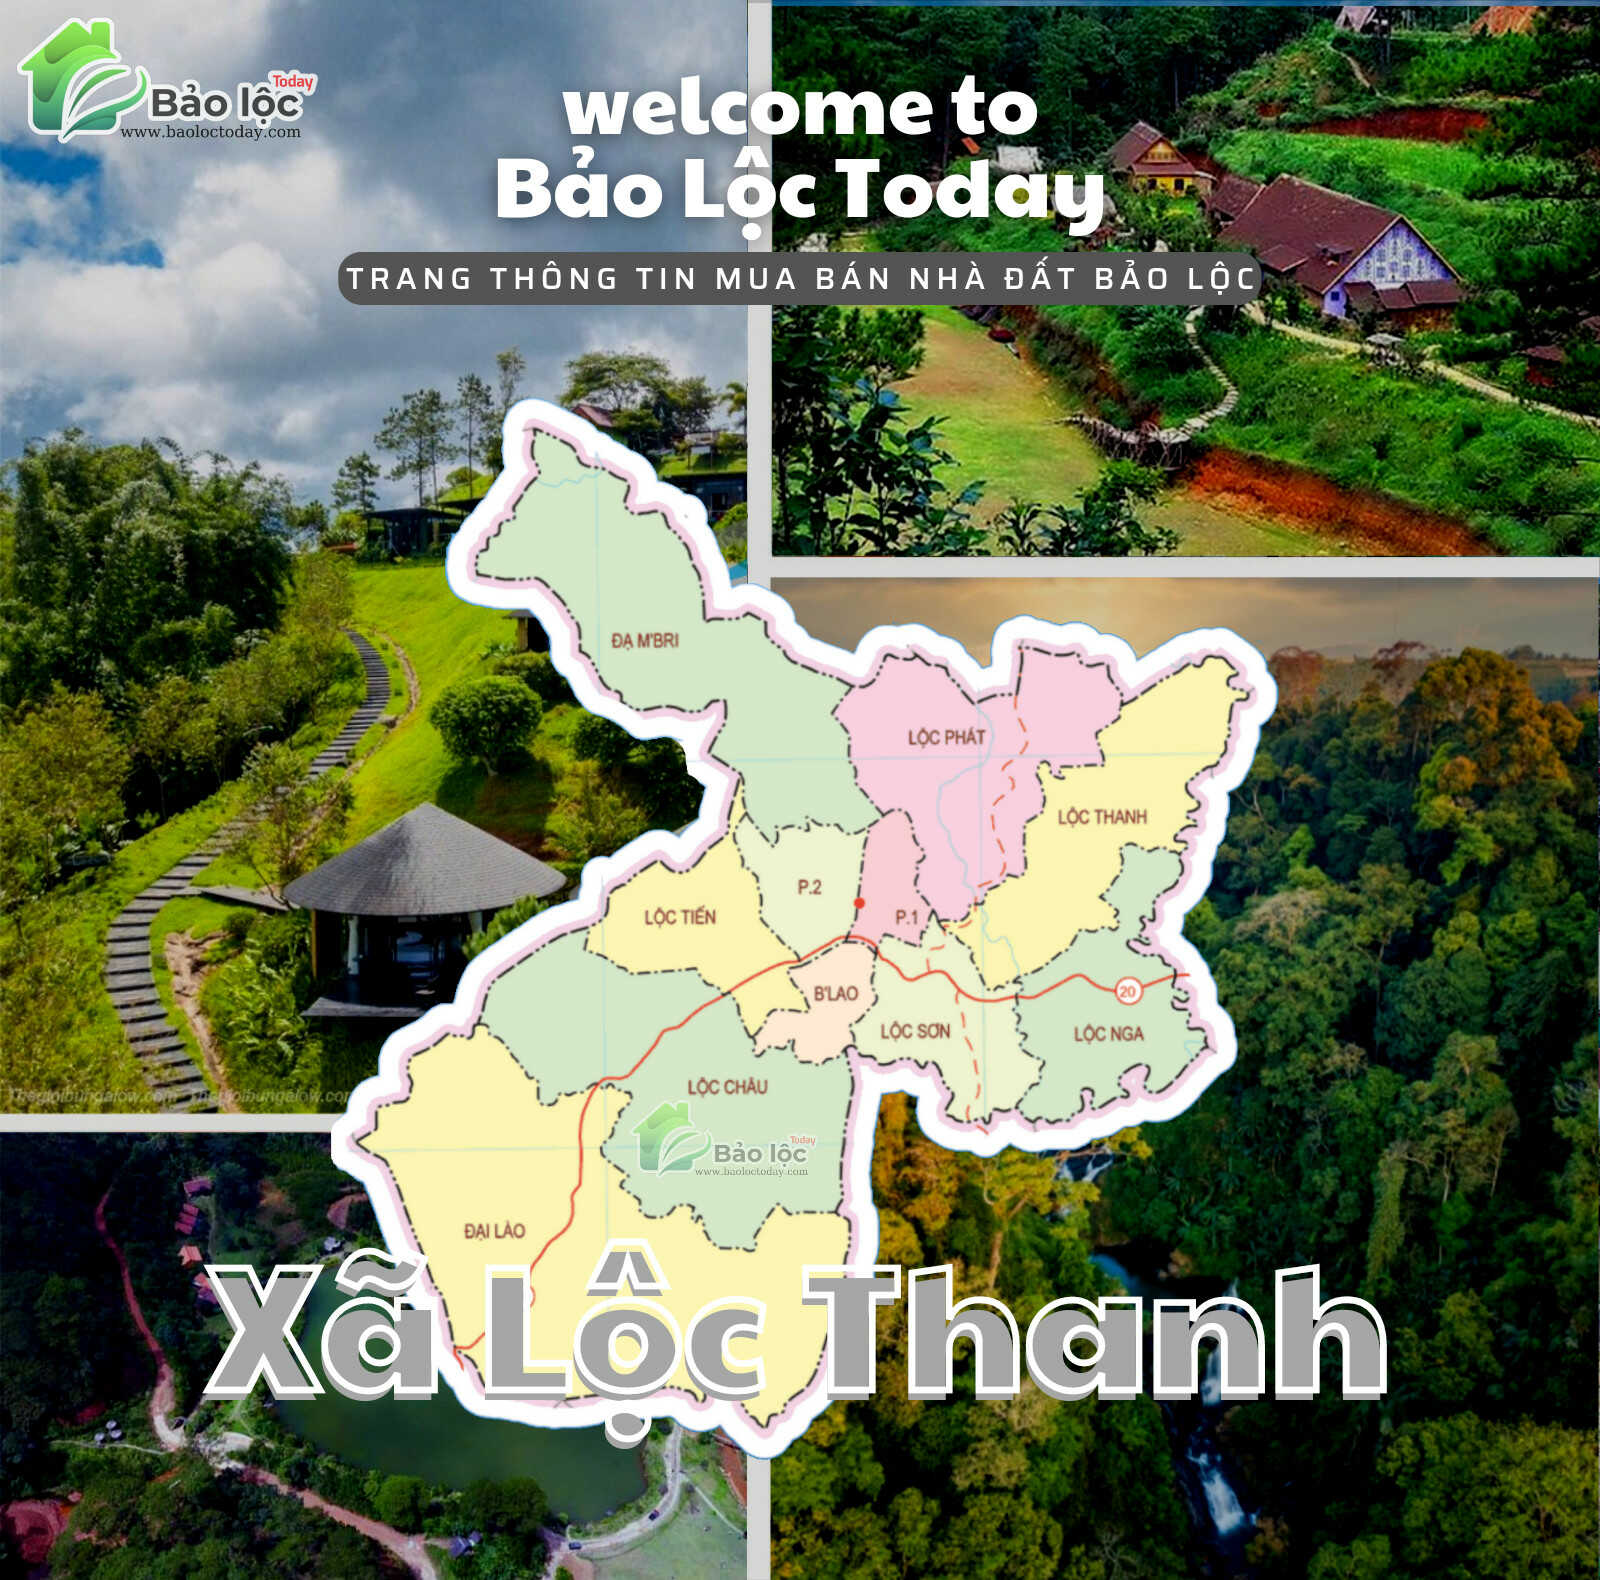 Xã Lộc Thanh, thành phố Bảo Lộc, Lâm Đồng